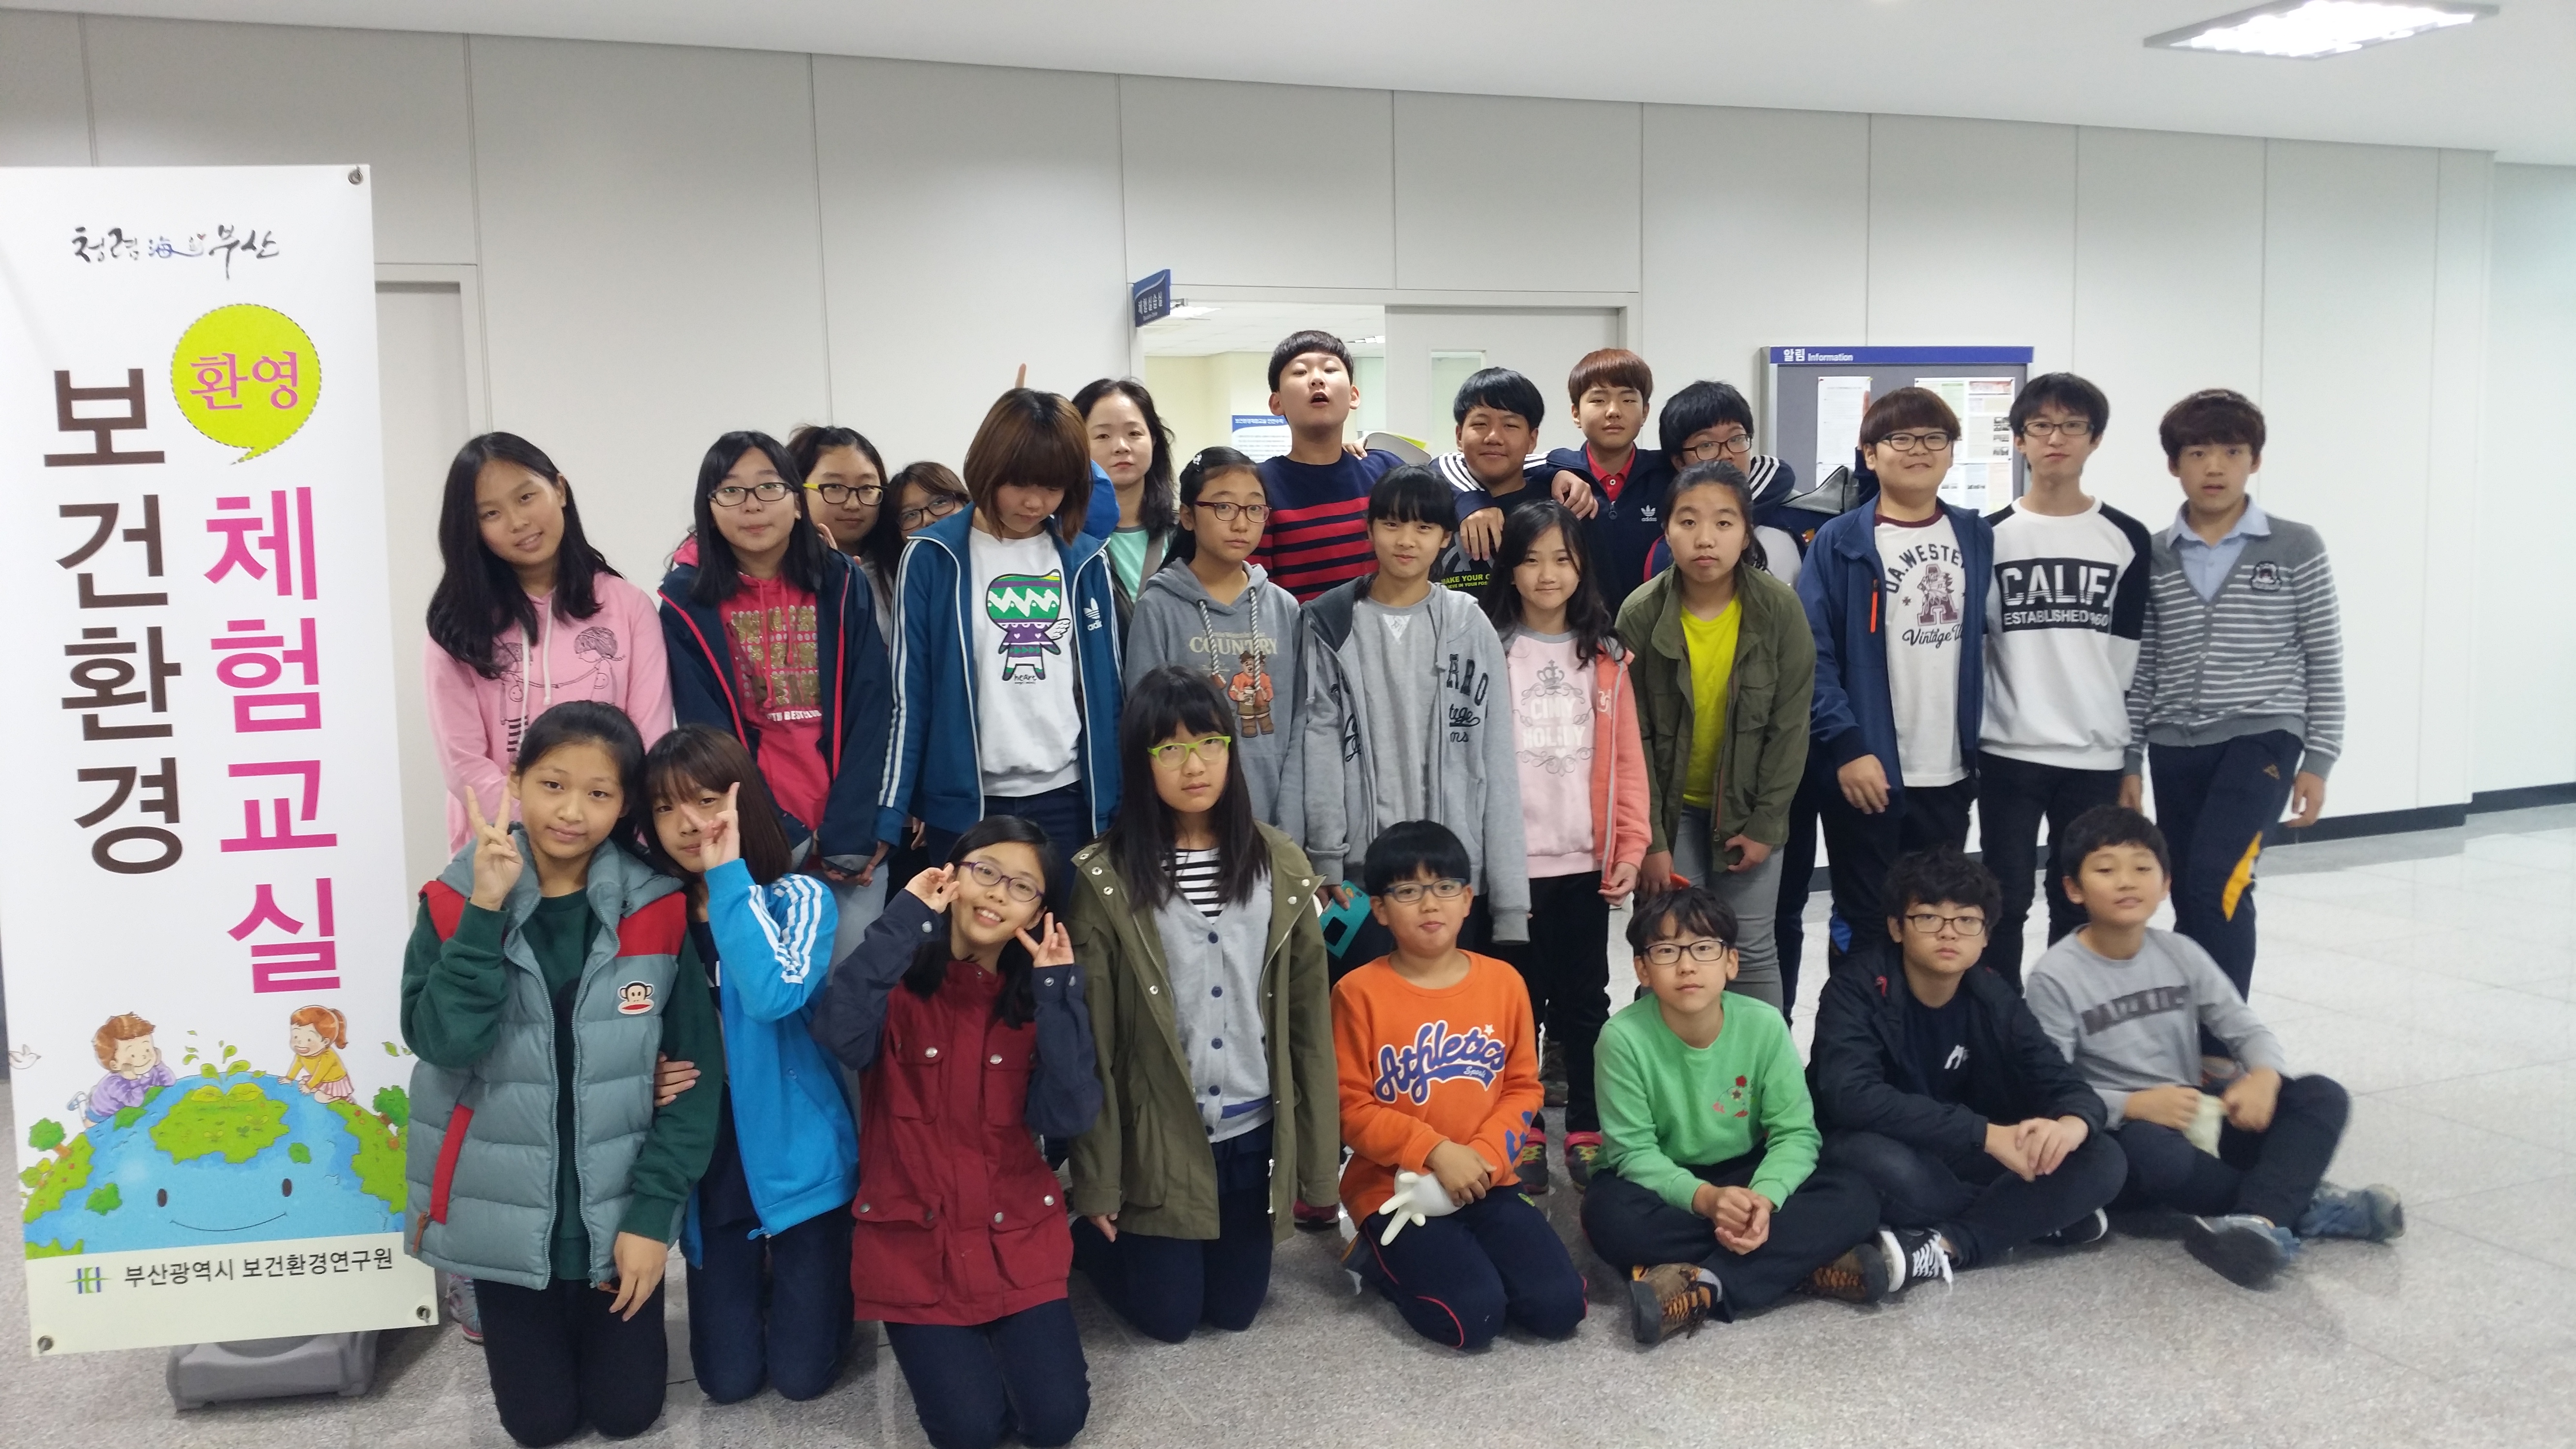 덕양초등학교(약품교실, 2014년 10월 28일)